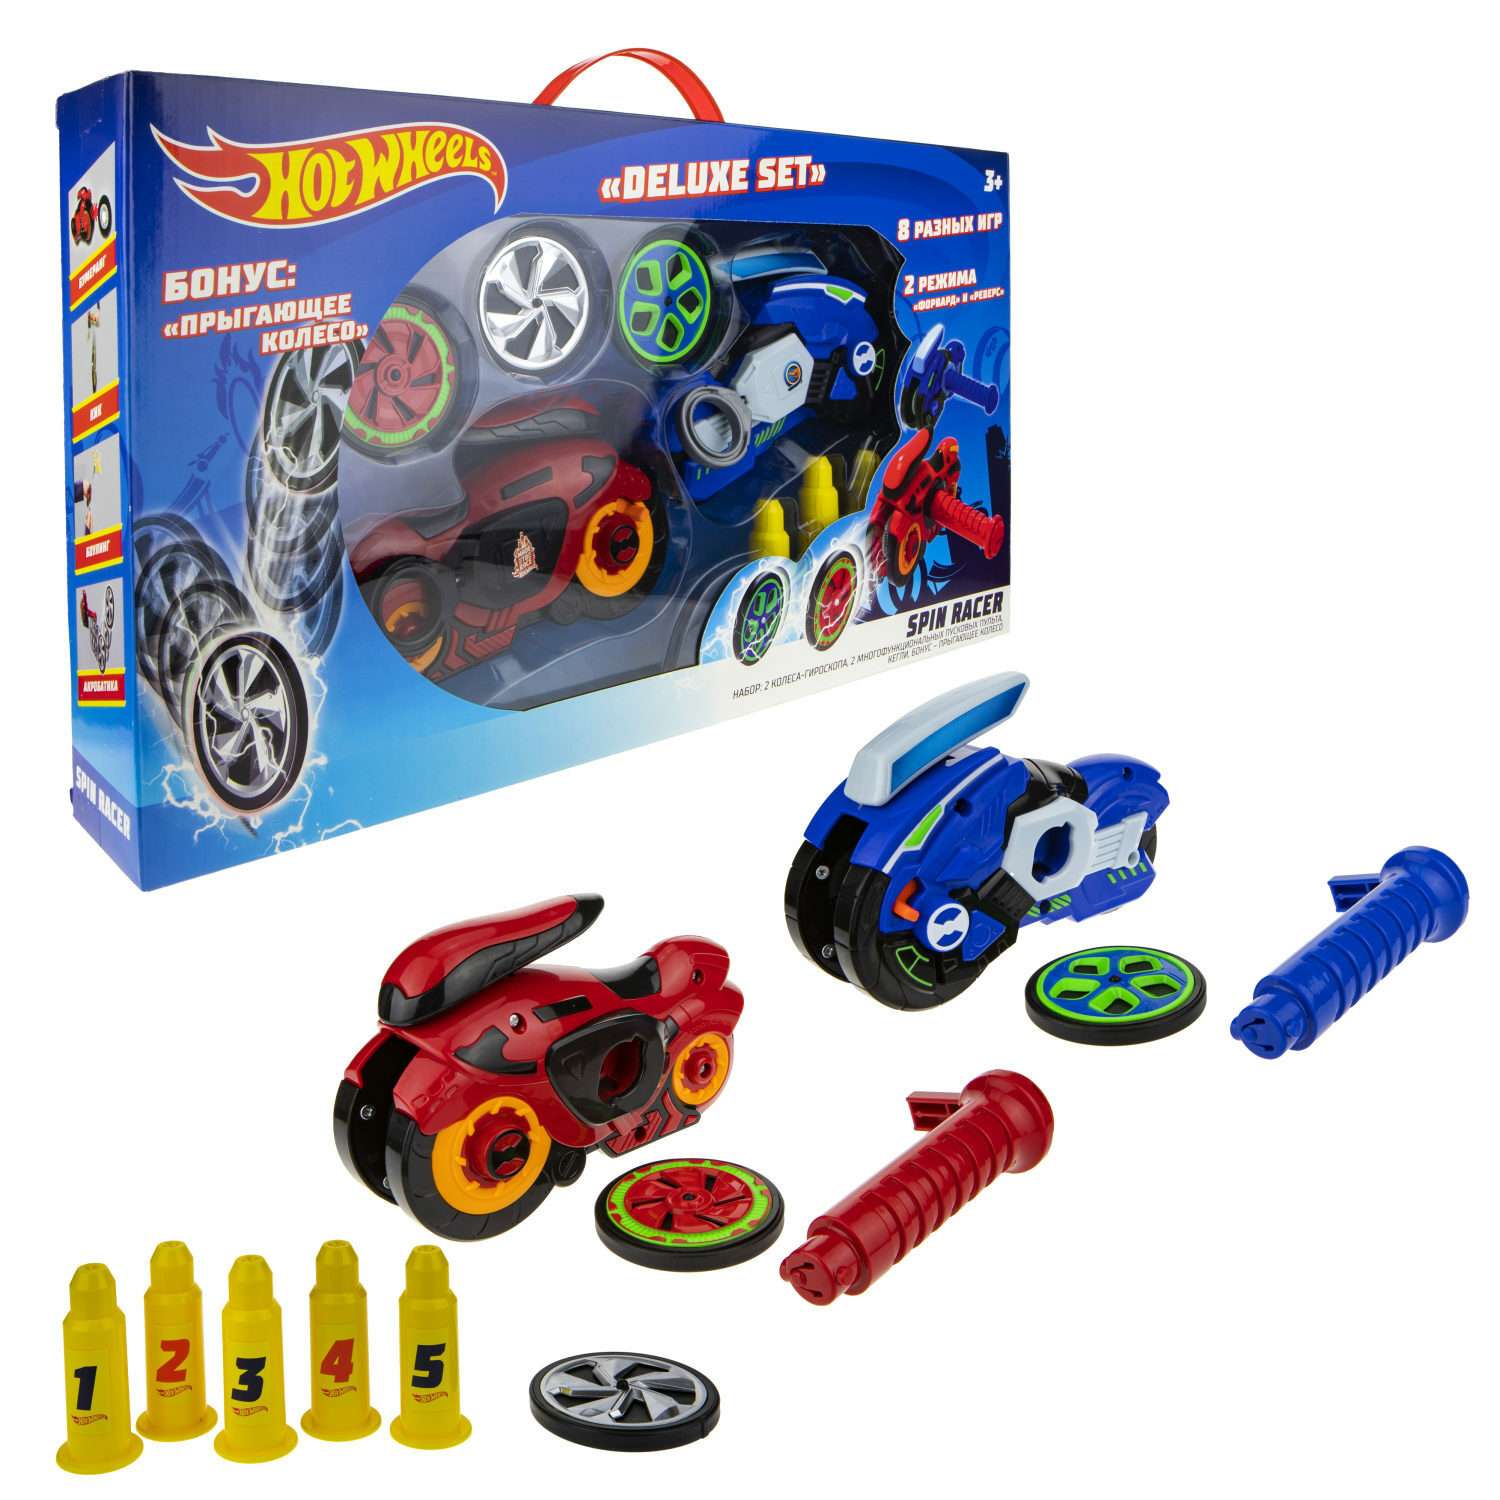 Игровой набор Hot Wheels Spin Racer Deluxe Set 2 игрушечных мотоцикла с колесами-гироскопами Т19375 - фото 2